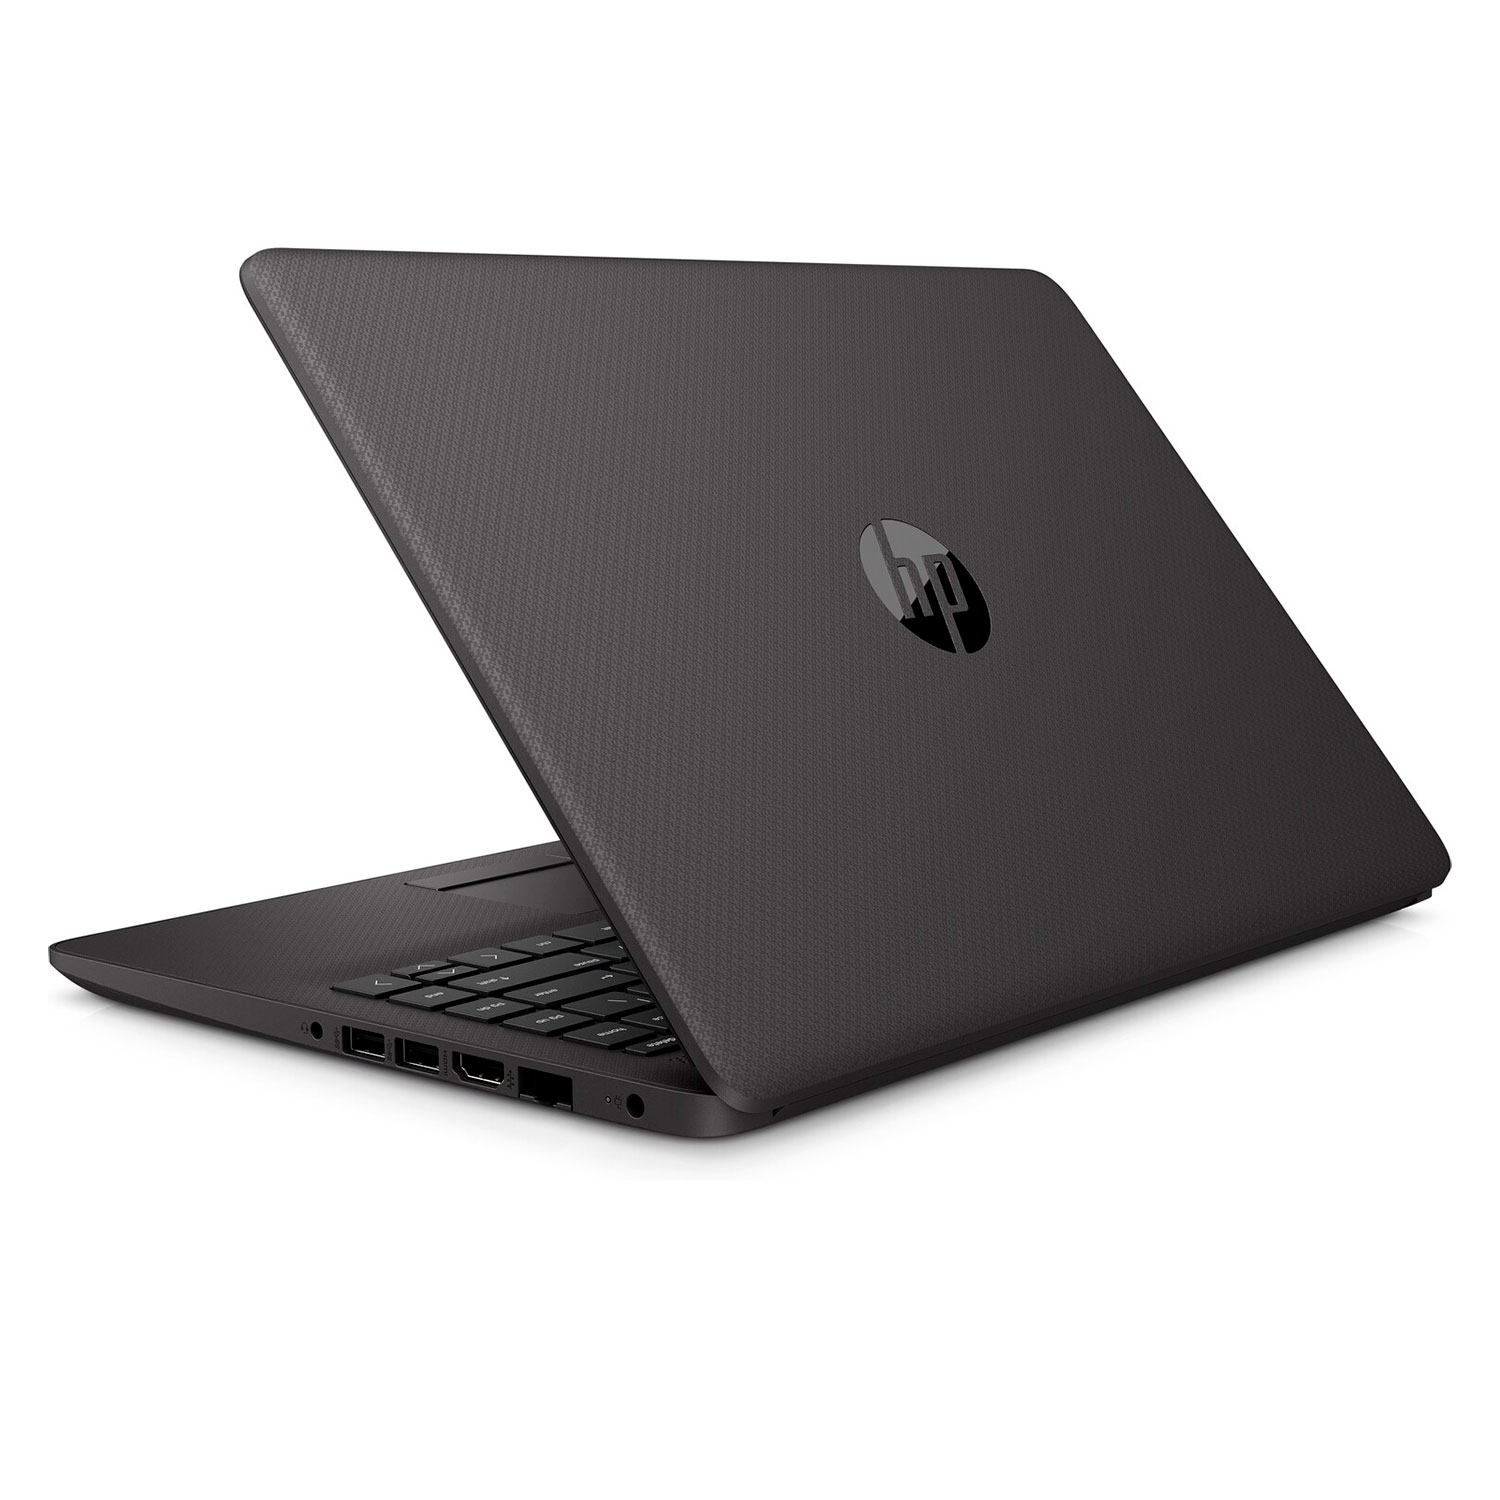 Notebook HP 15-GW0501LA 15.6" AMD 3020E 128GB SSD 4GB RAM + Capa + Mouse + Fone de Ouvido - Preto